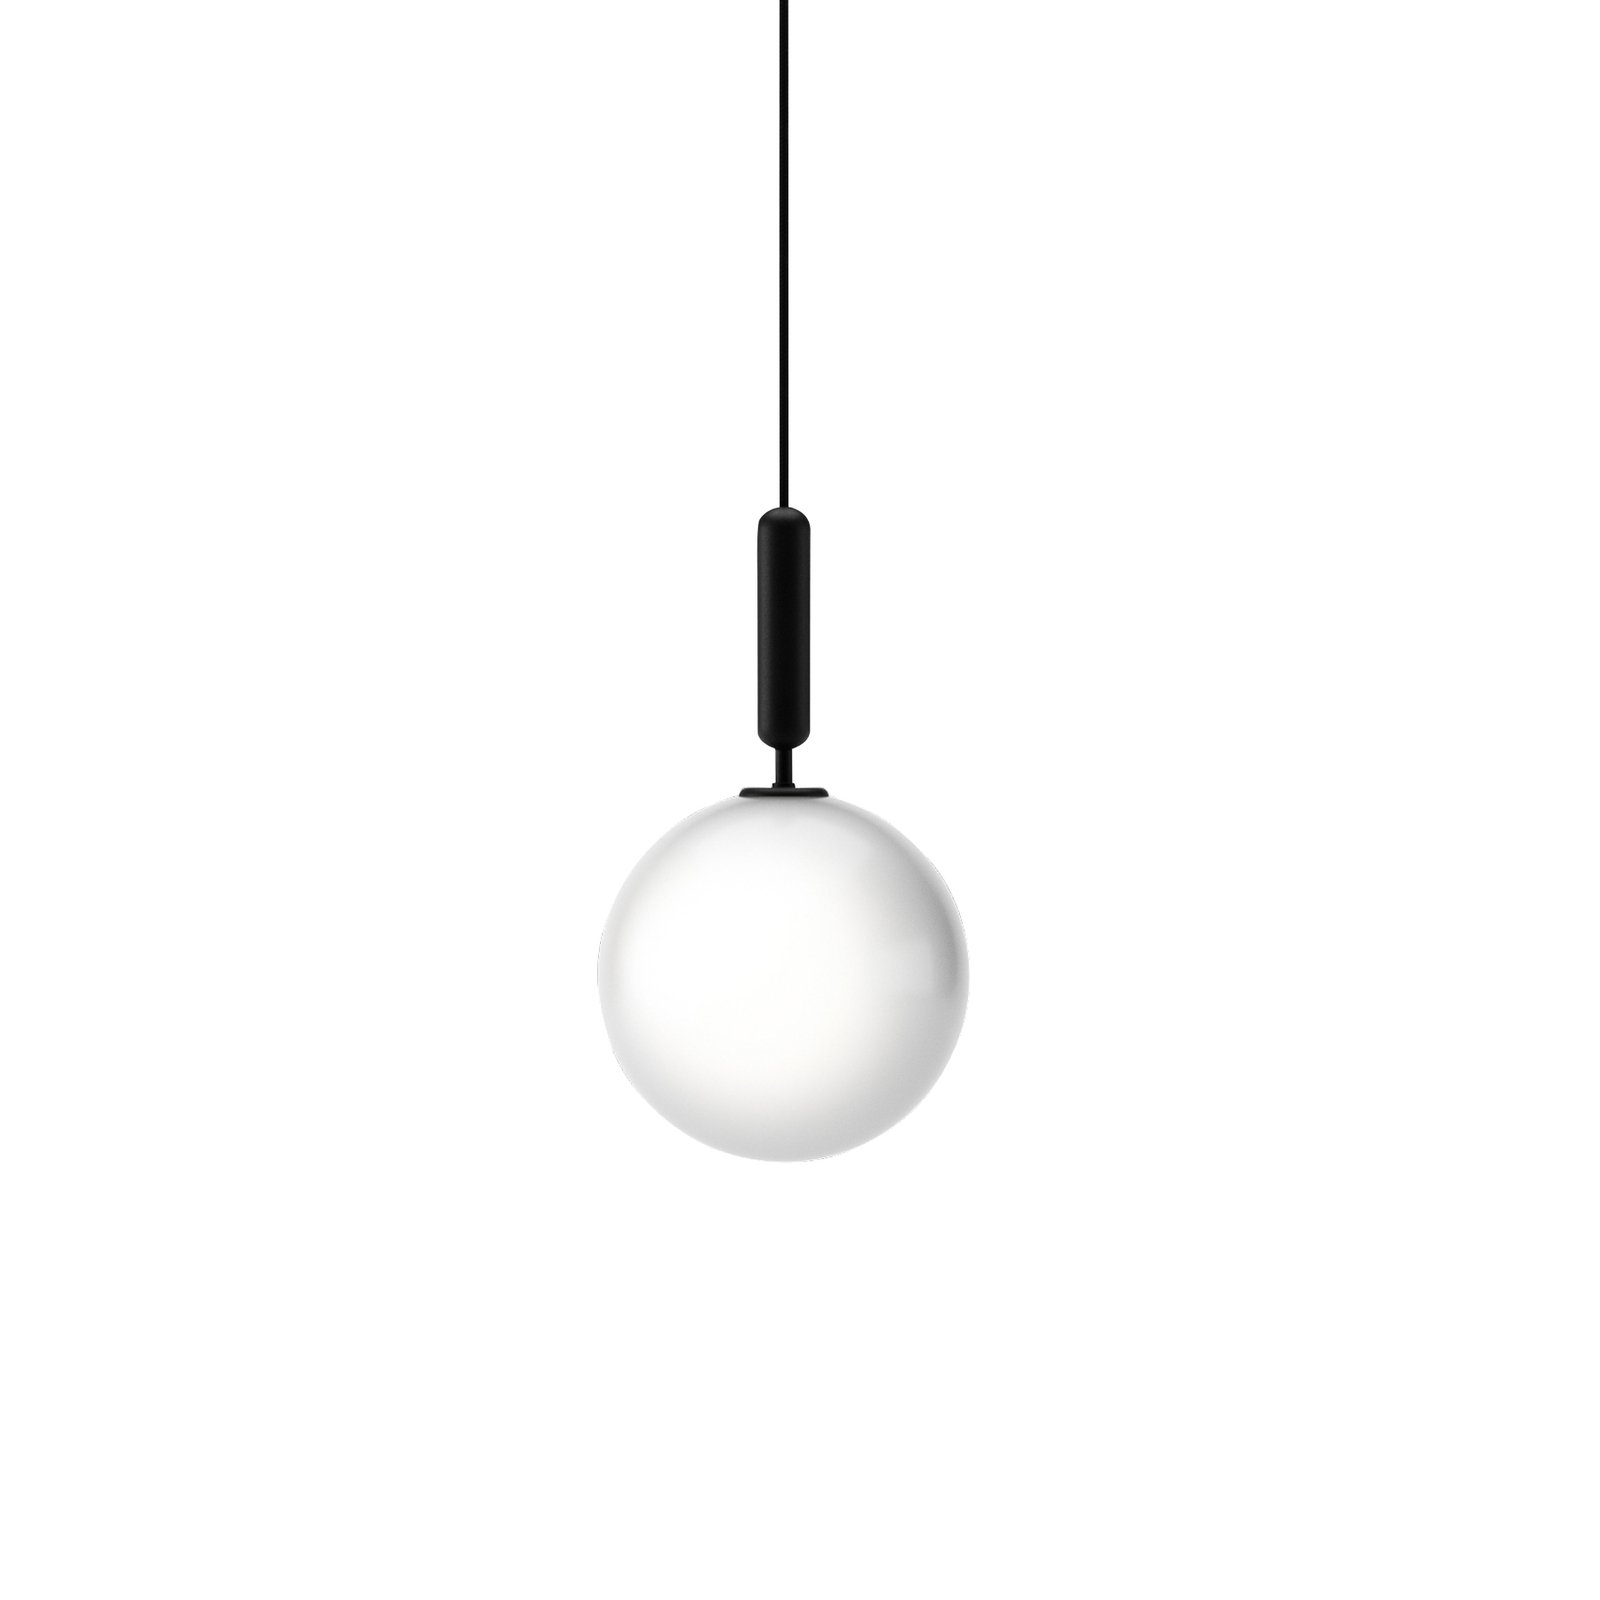 Nuura Miira 1 Large hanging lamp 1-bulb grey/white